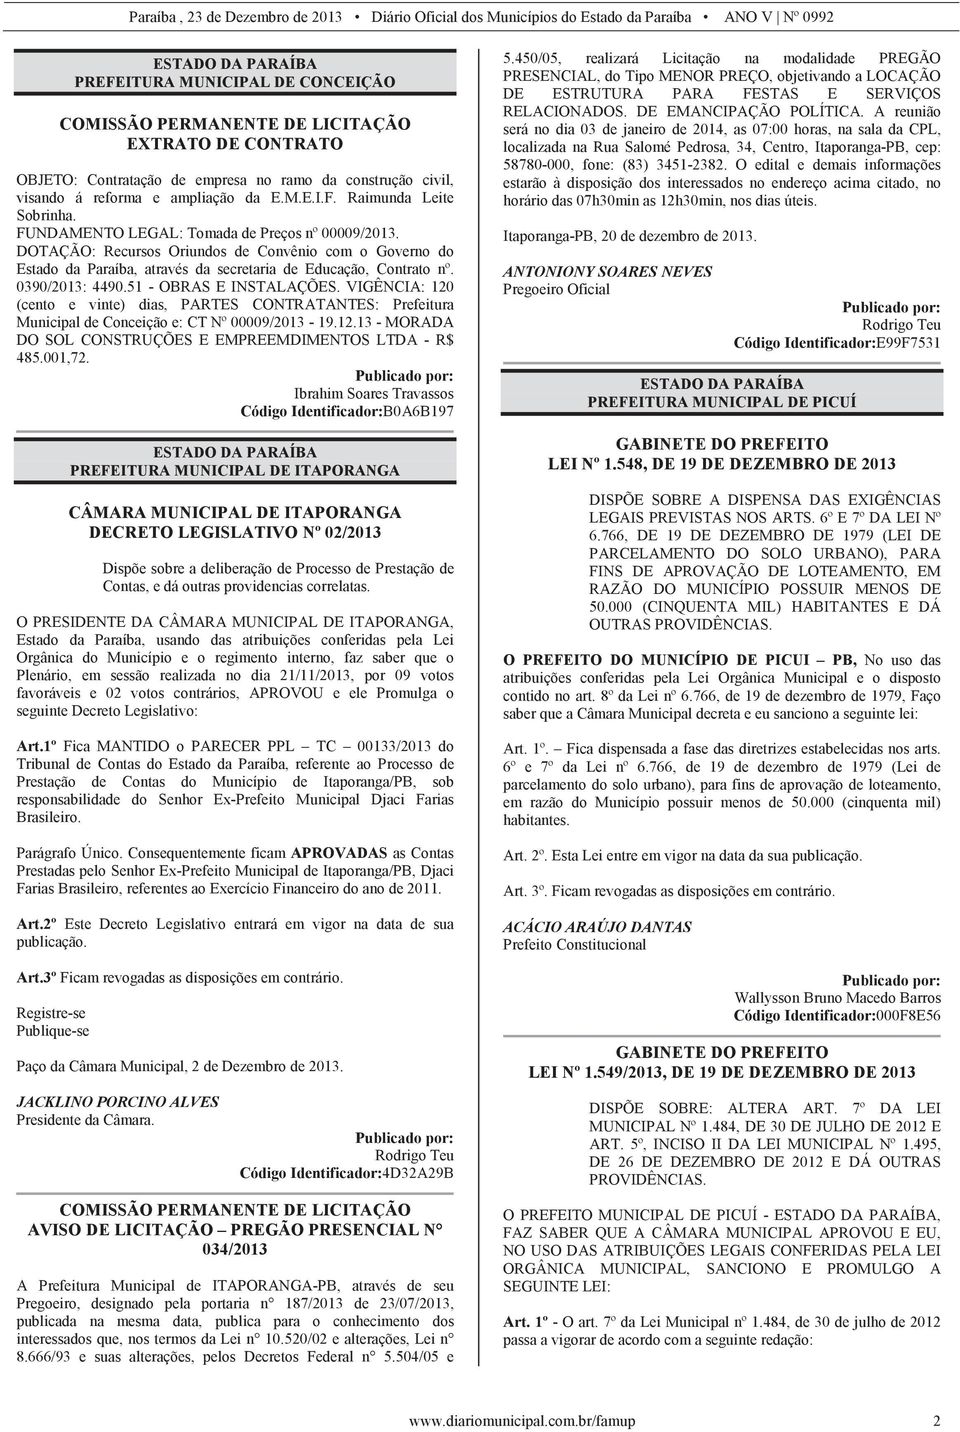 DOTAÇÃO: Recursos Oriundos de Convênio com o Governo do Estado da Paraíba, através da secretaria de Educação, Contrato nº. 0390/2013: 4490.51 - OBRAS E INSTALAÇÕES.